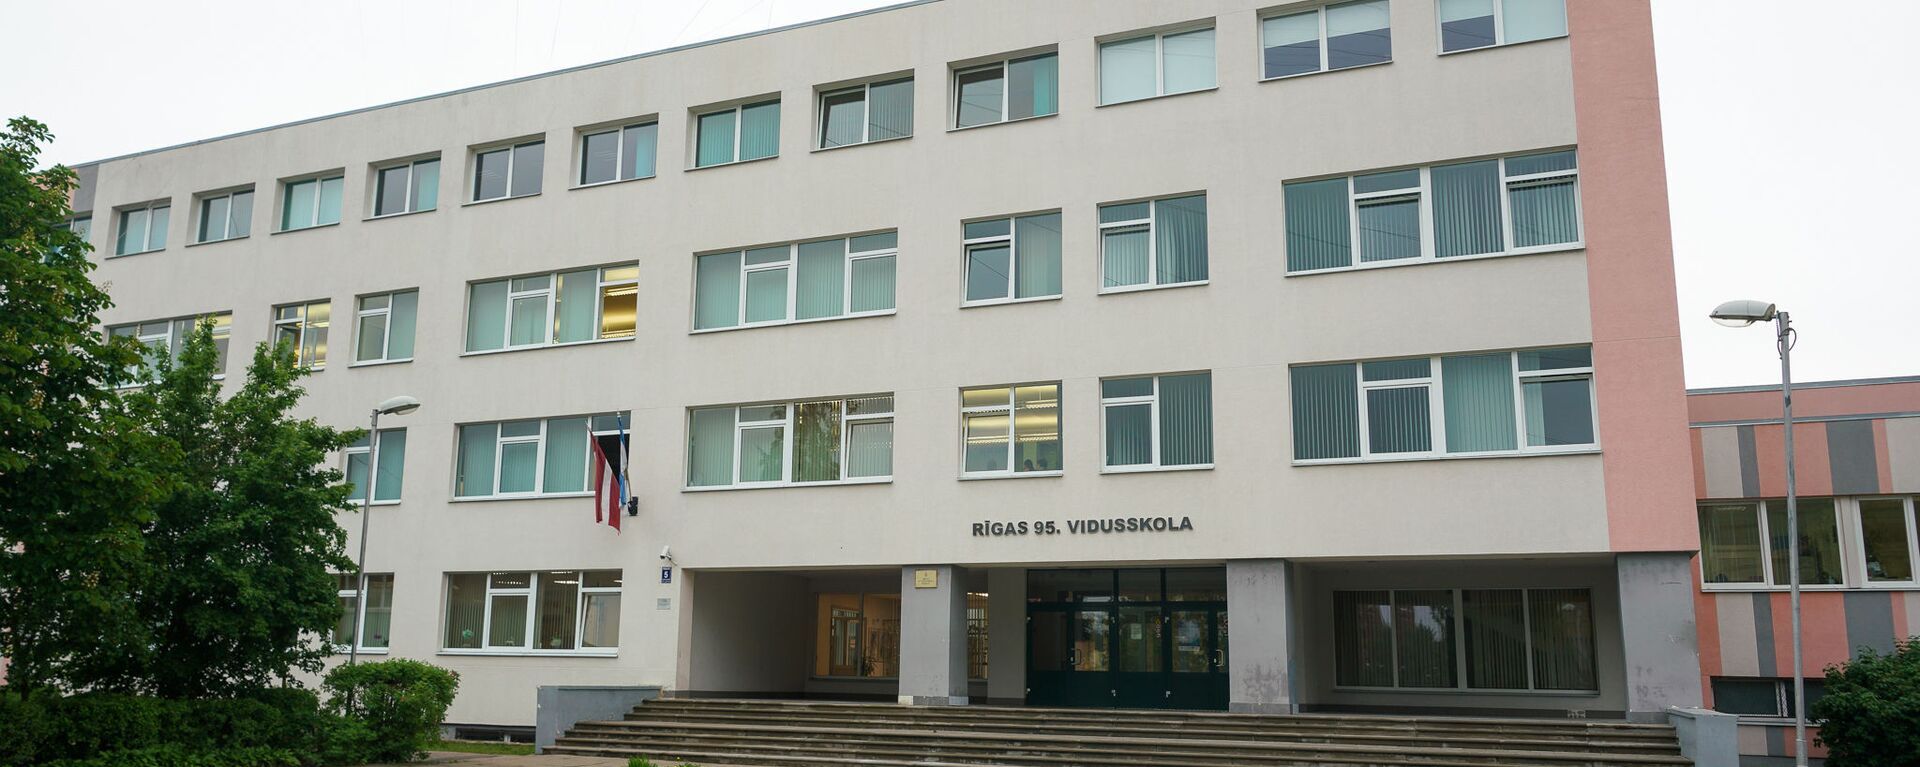 Здание 95-й Рижской средней школы - Sputnik Латвия, 1920, 11.06.2020